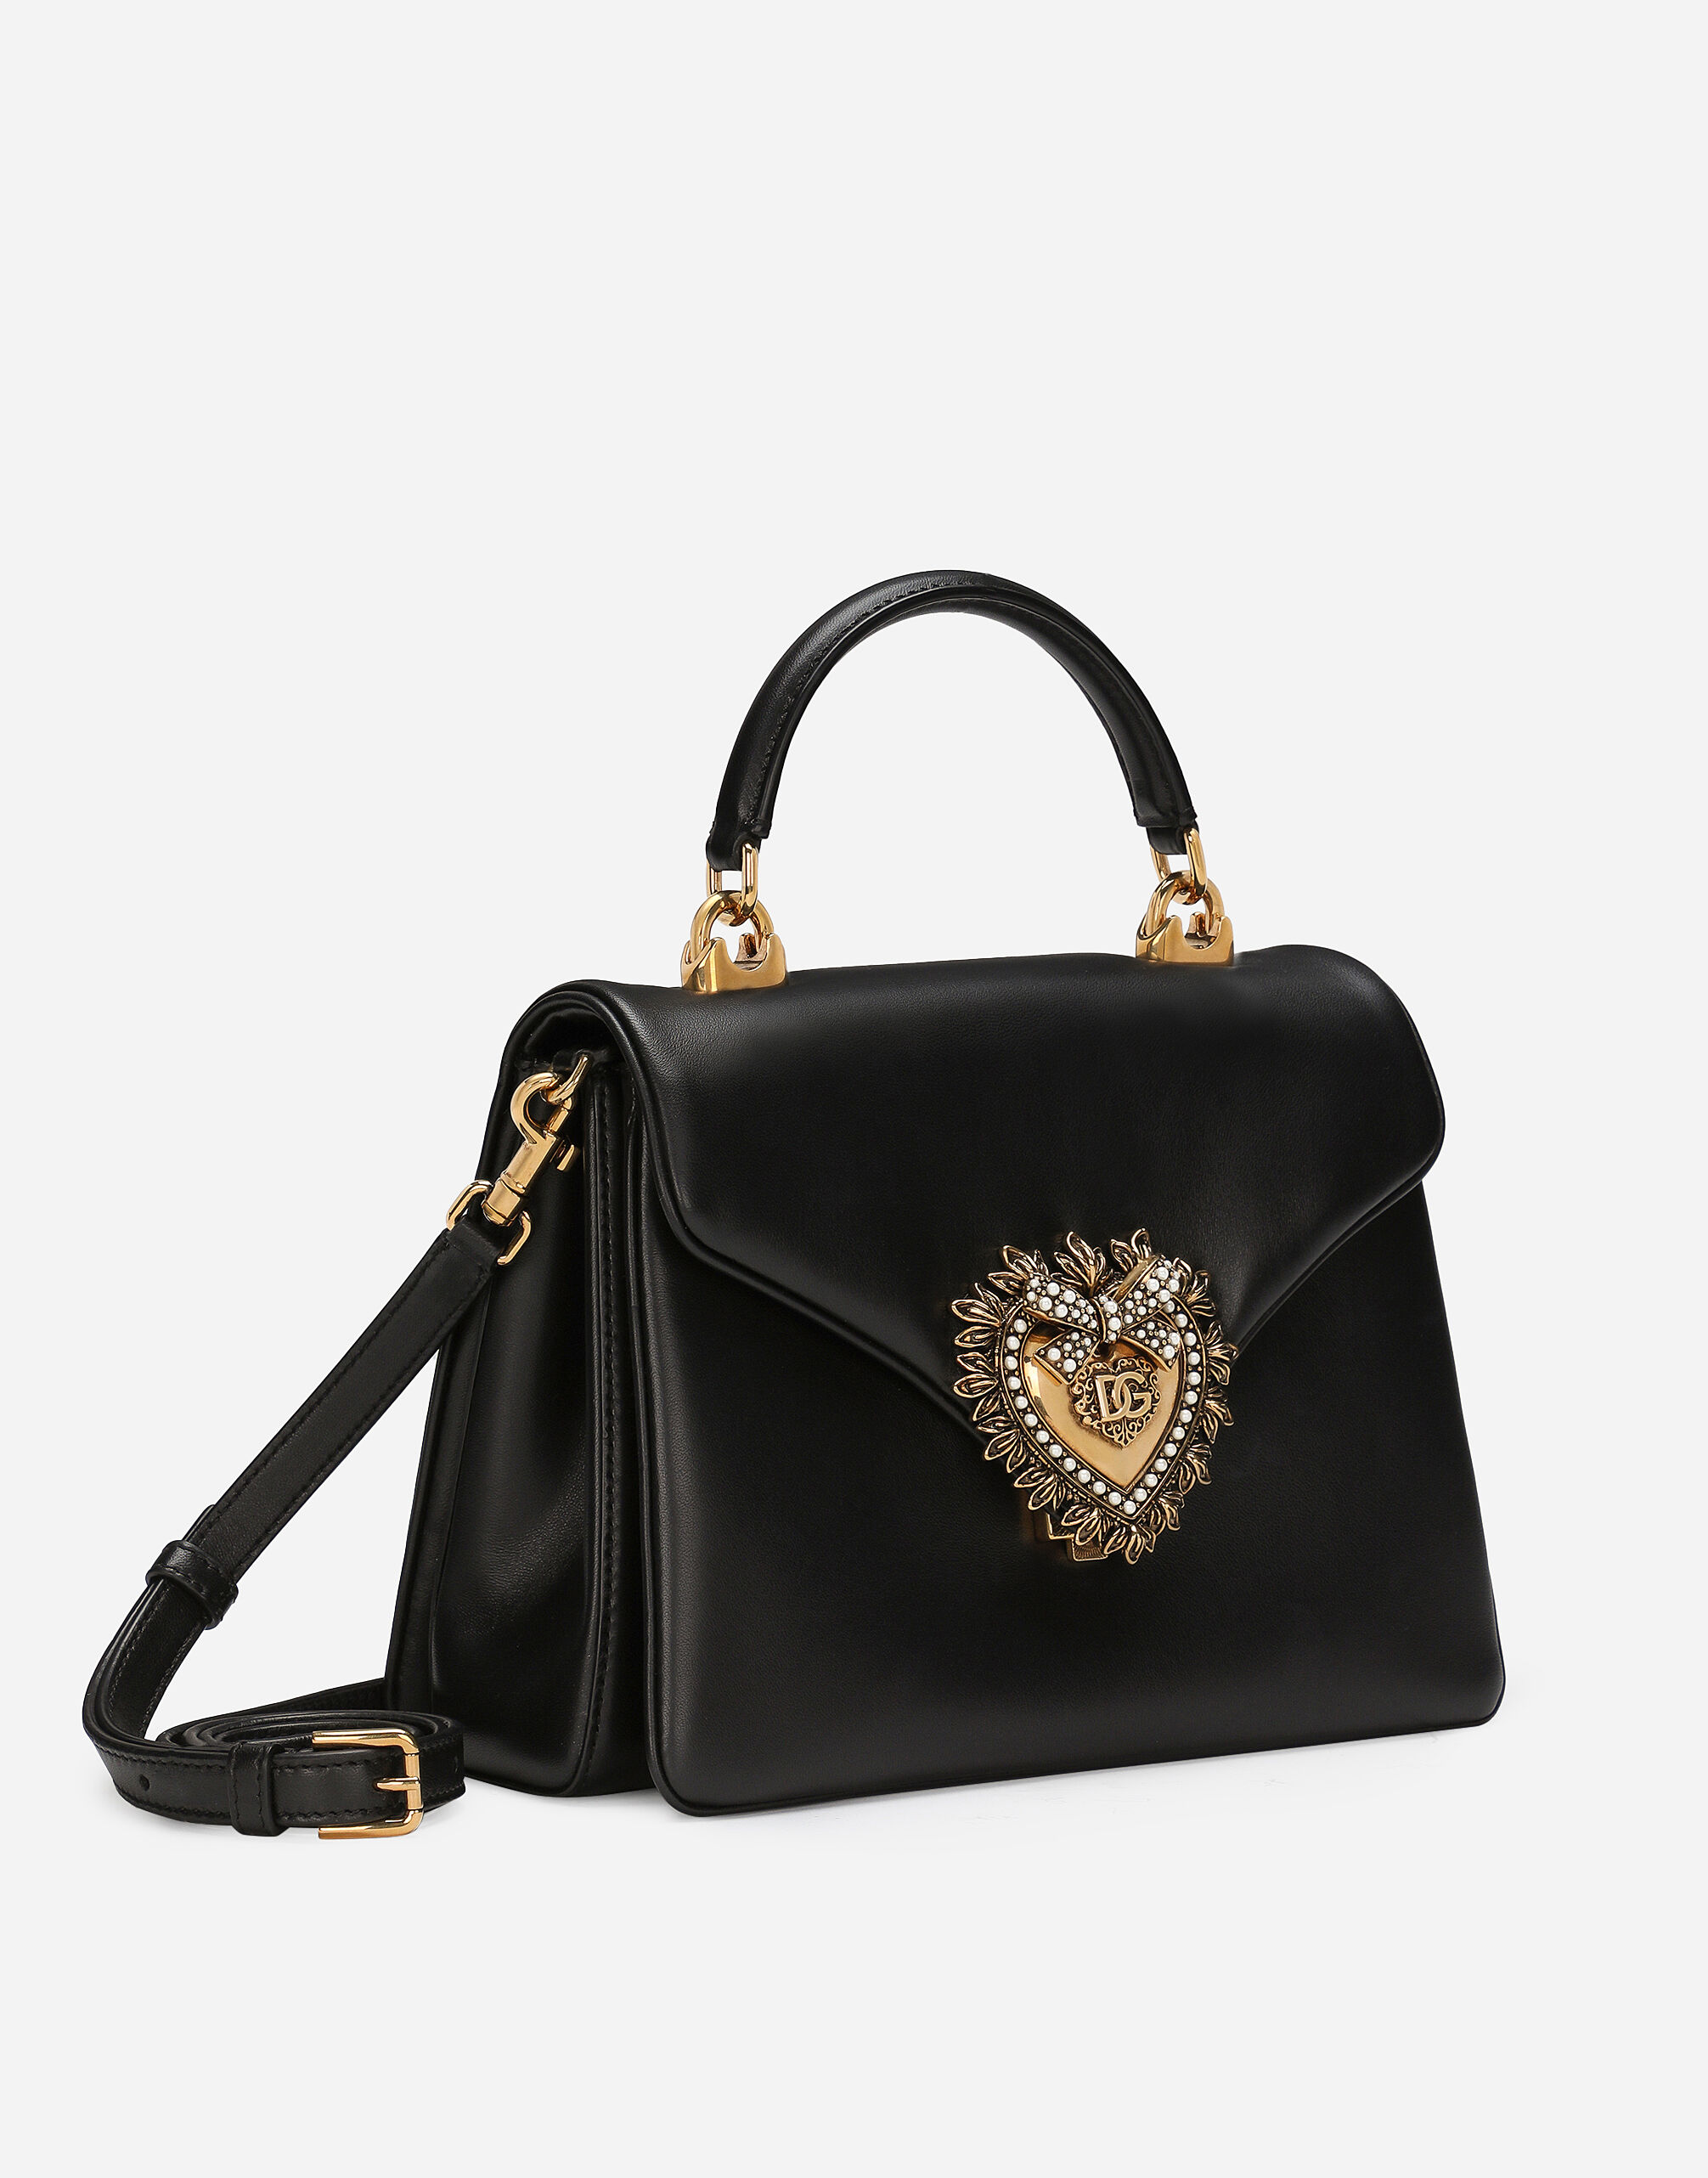 Devotion handbag in Black for Women | Dolce&Gabbana®